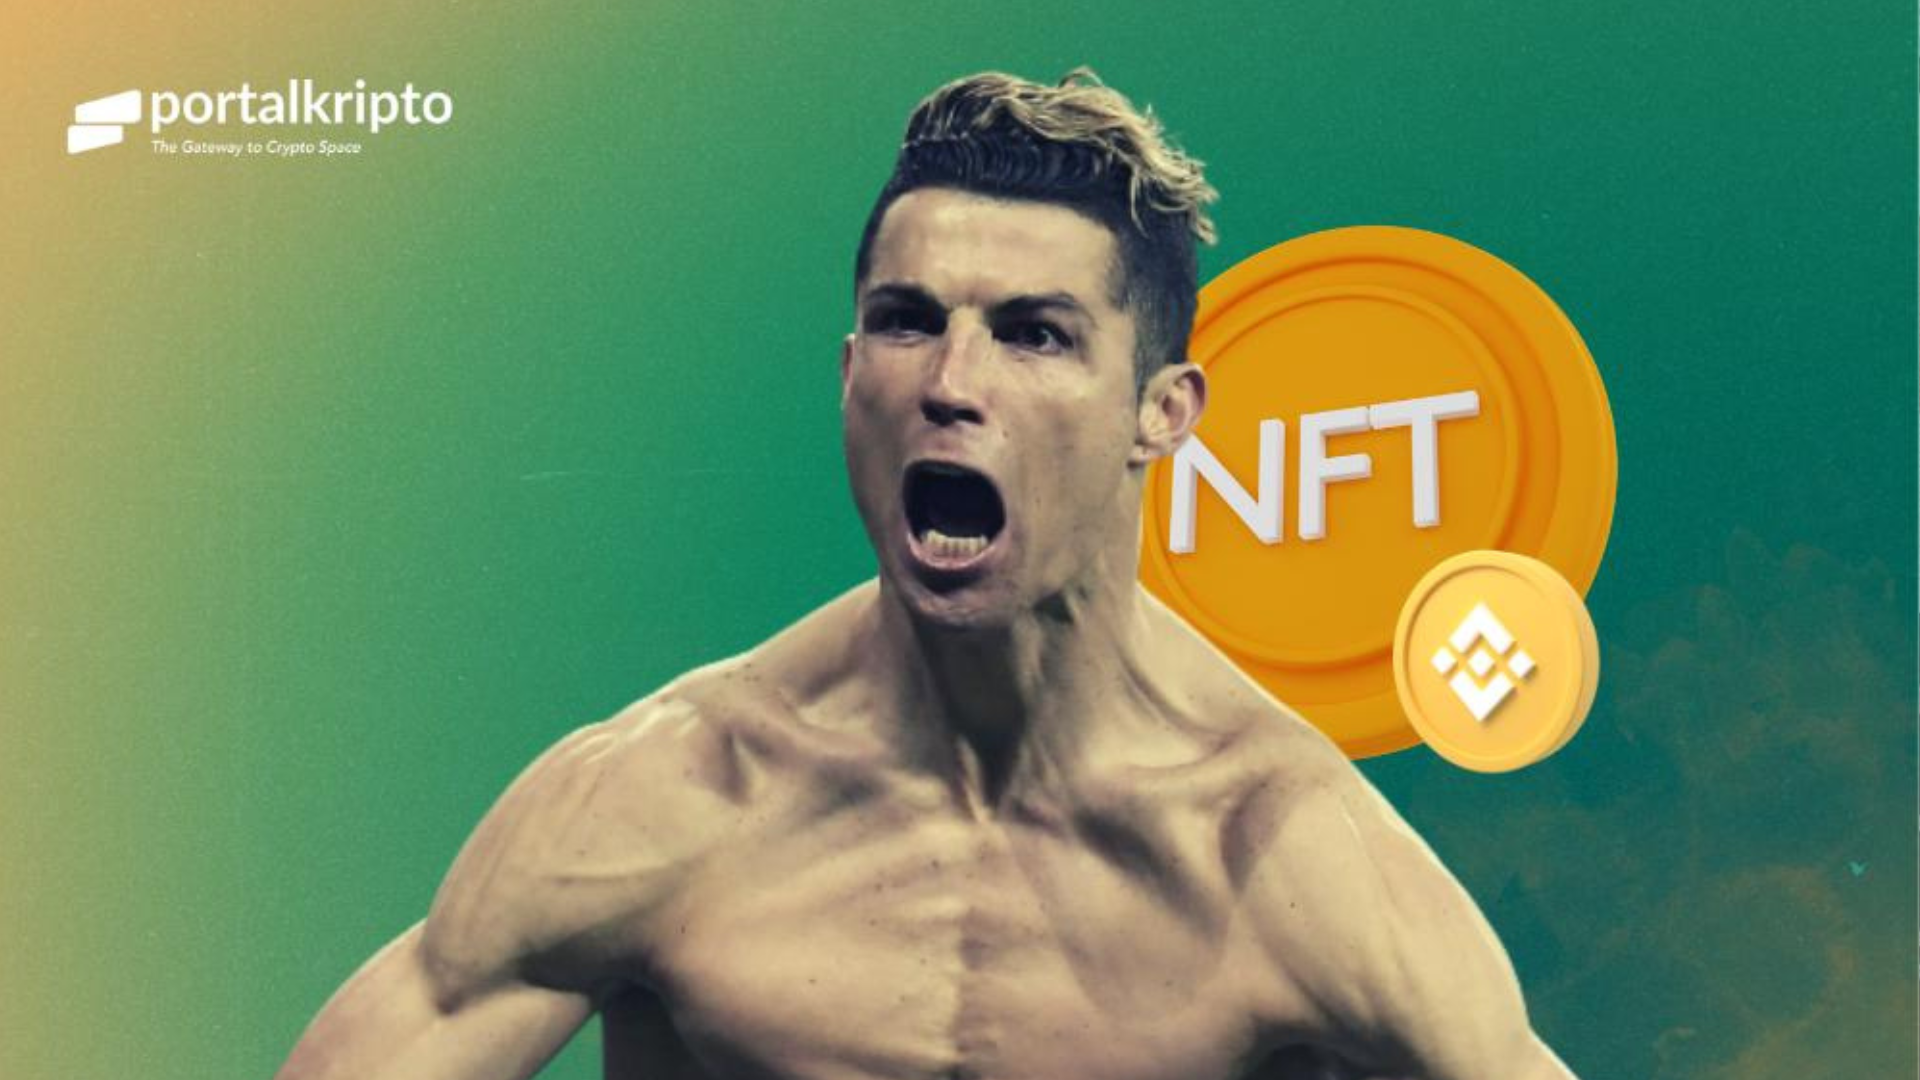 Digaet Binance, Cristiano Ronaldo Akan Luncurkan NFT Eksklusif